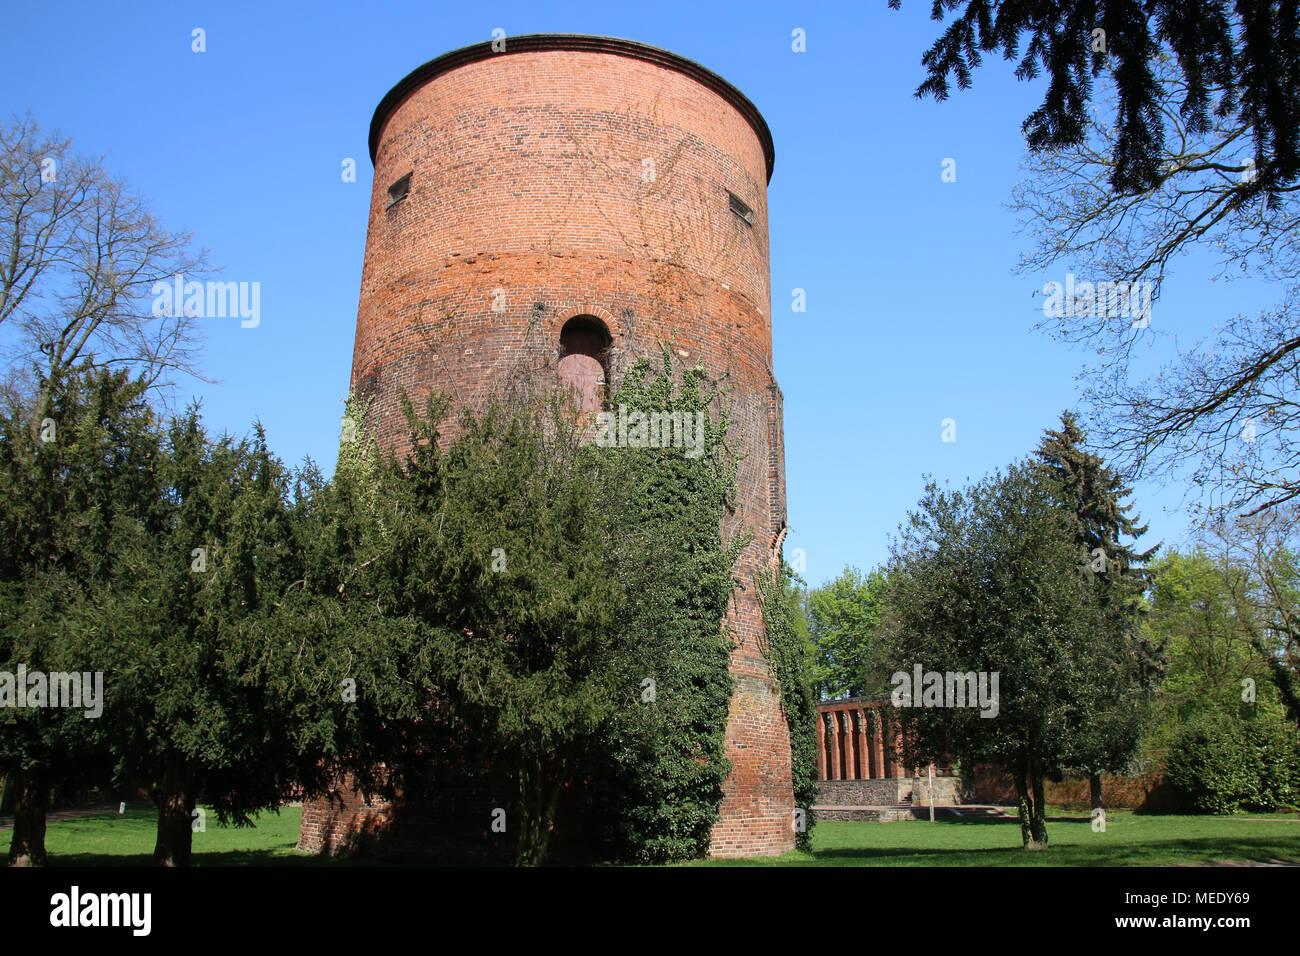 Salzwedel, Allemagne - 20 Avril 2018 : Vue de la tour de l'ancien château Salzwedel, qui est actuellement seulement en fragments. Banque D'Images